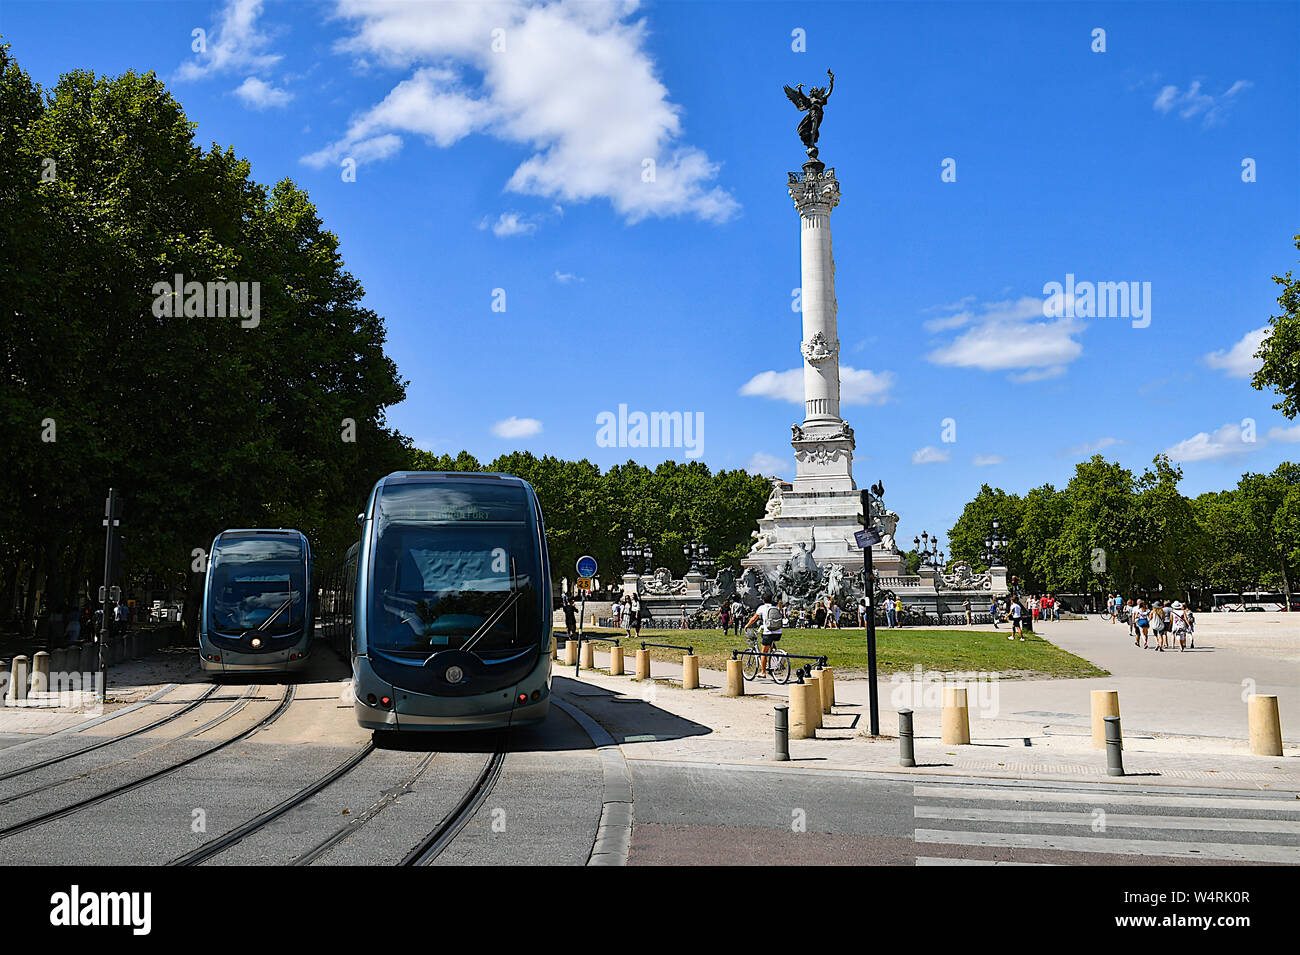 Les Trams passant monument aux Girondins, Bordeaux, France Banque D'Images